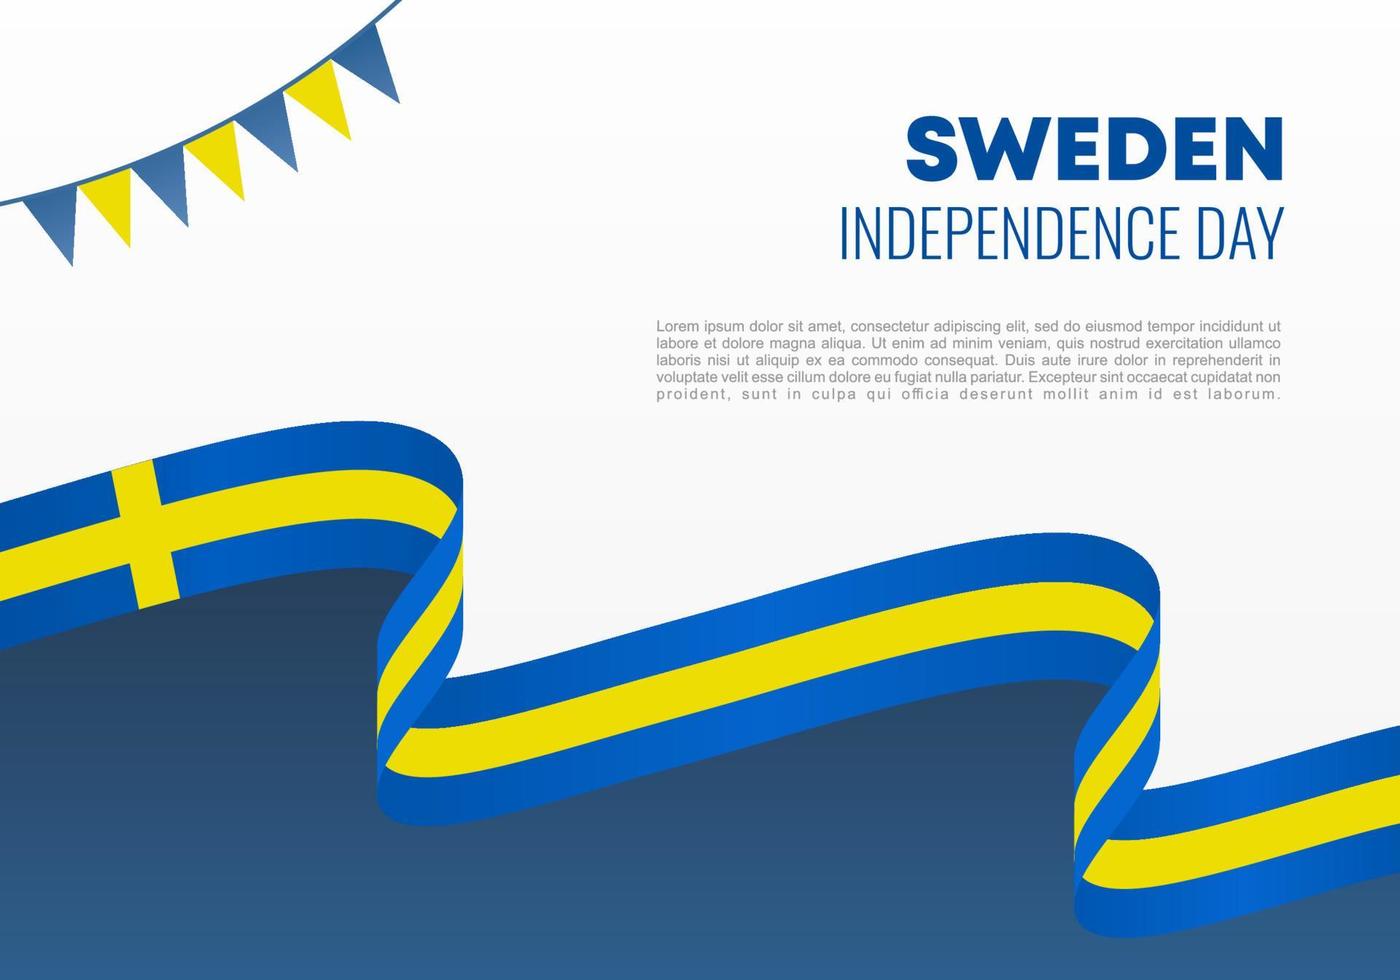 Sweden Independence day background banner for national celebration vector